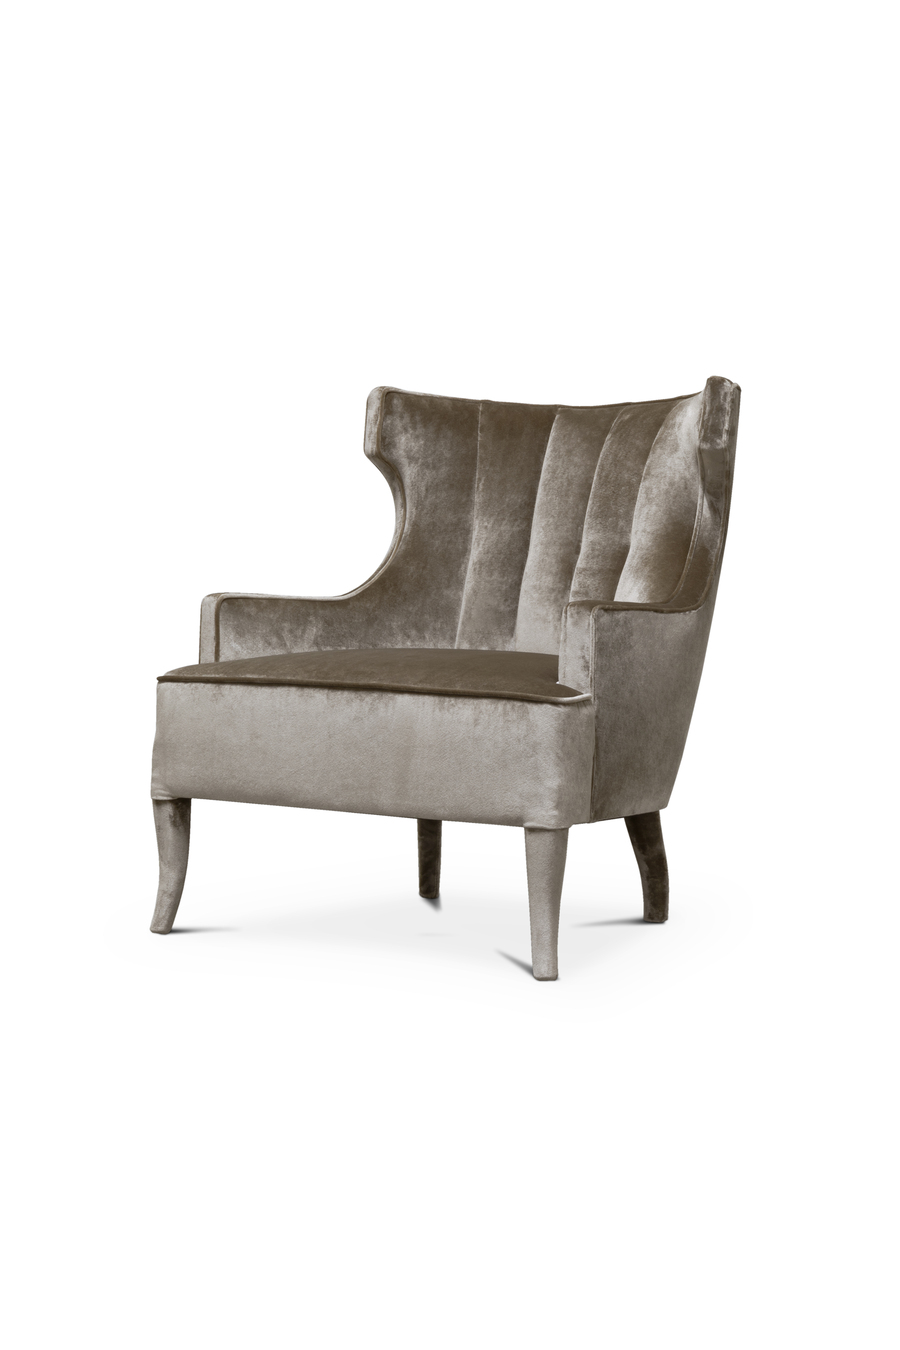 perfect bedroom chair in grey velvet